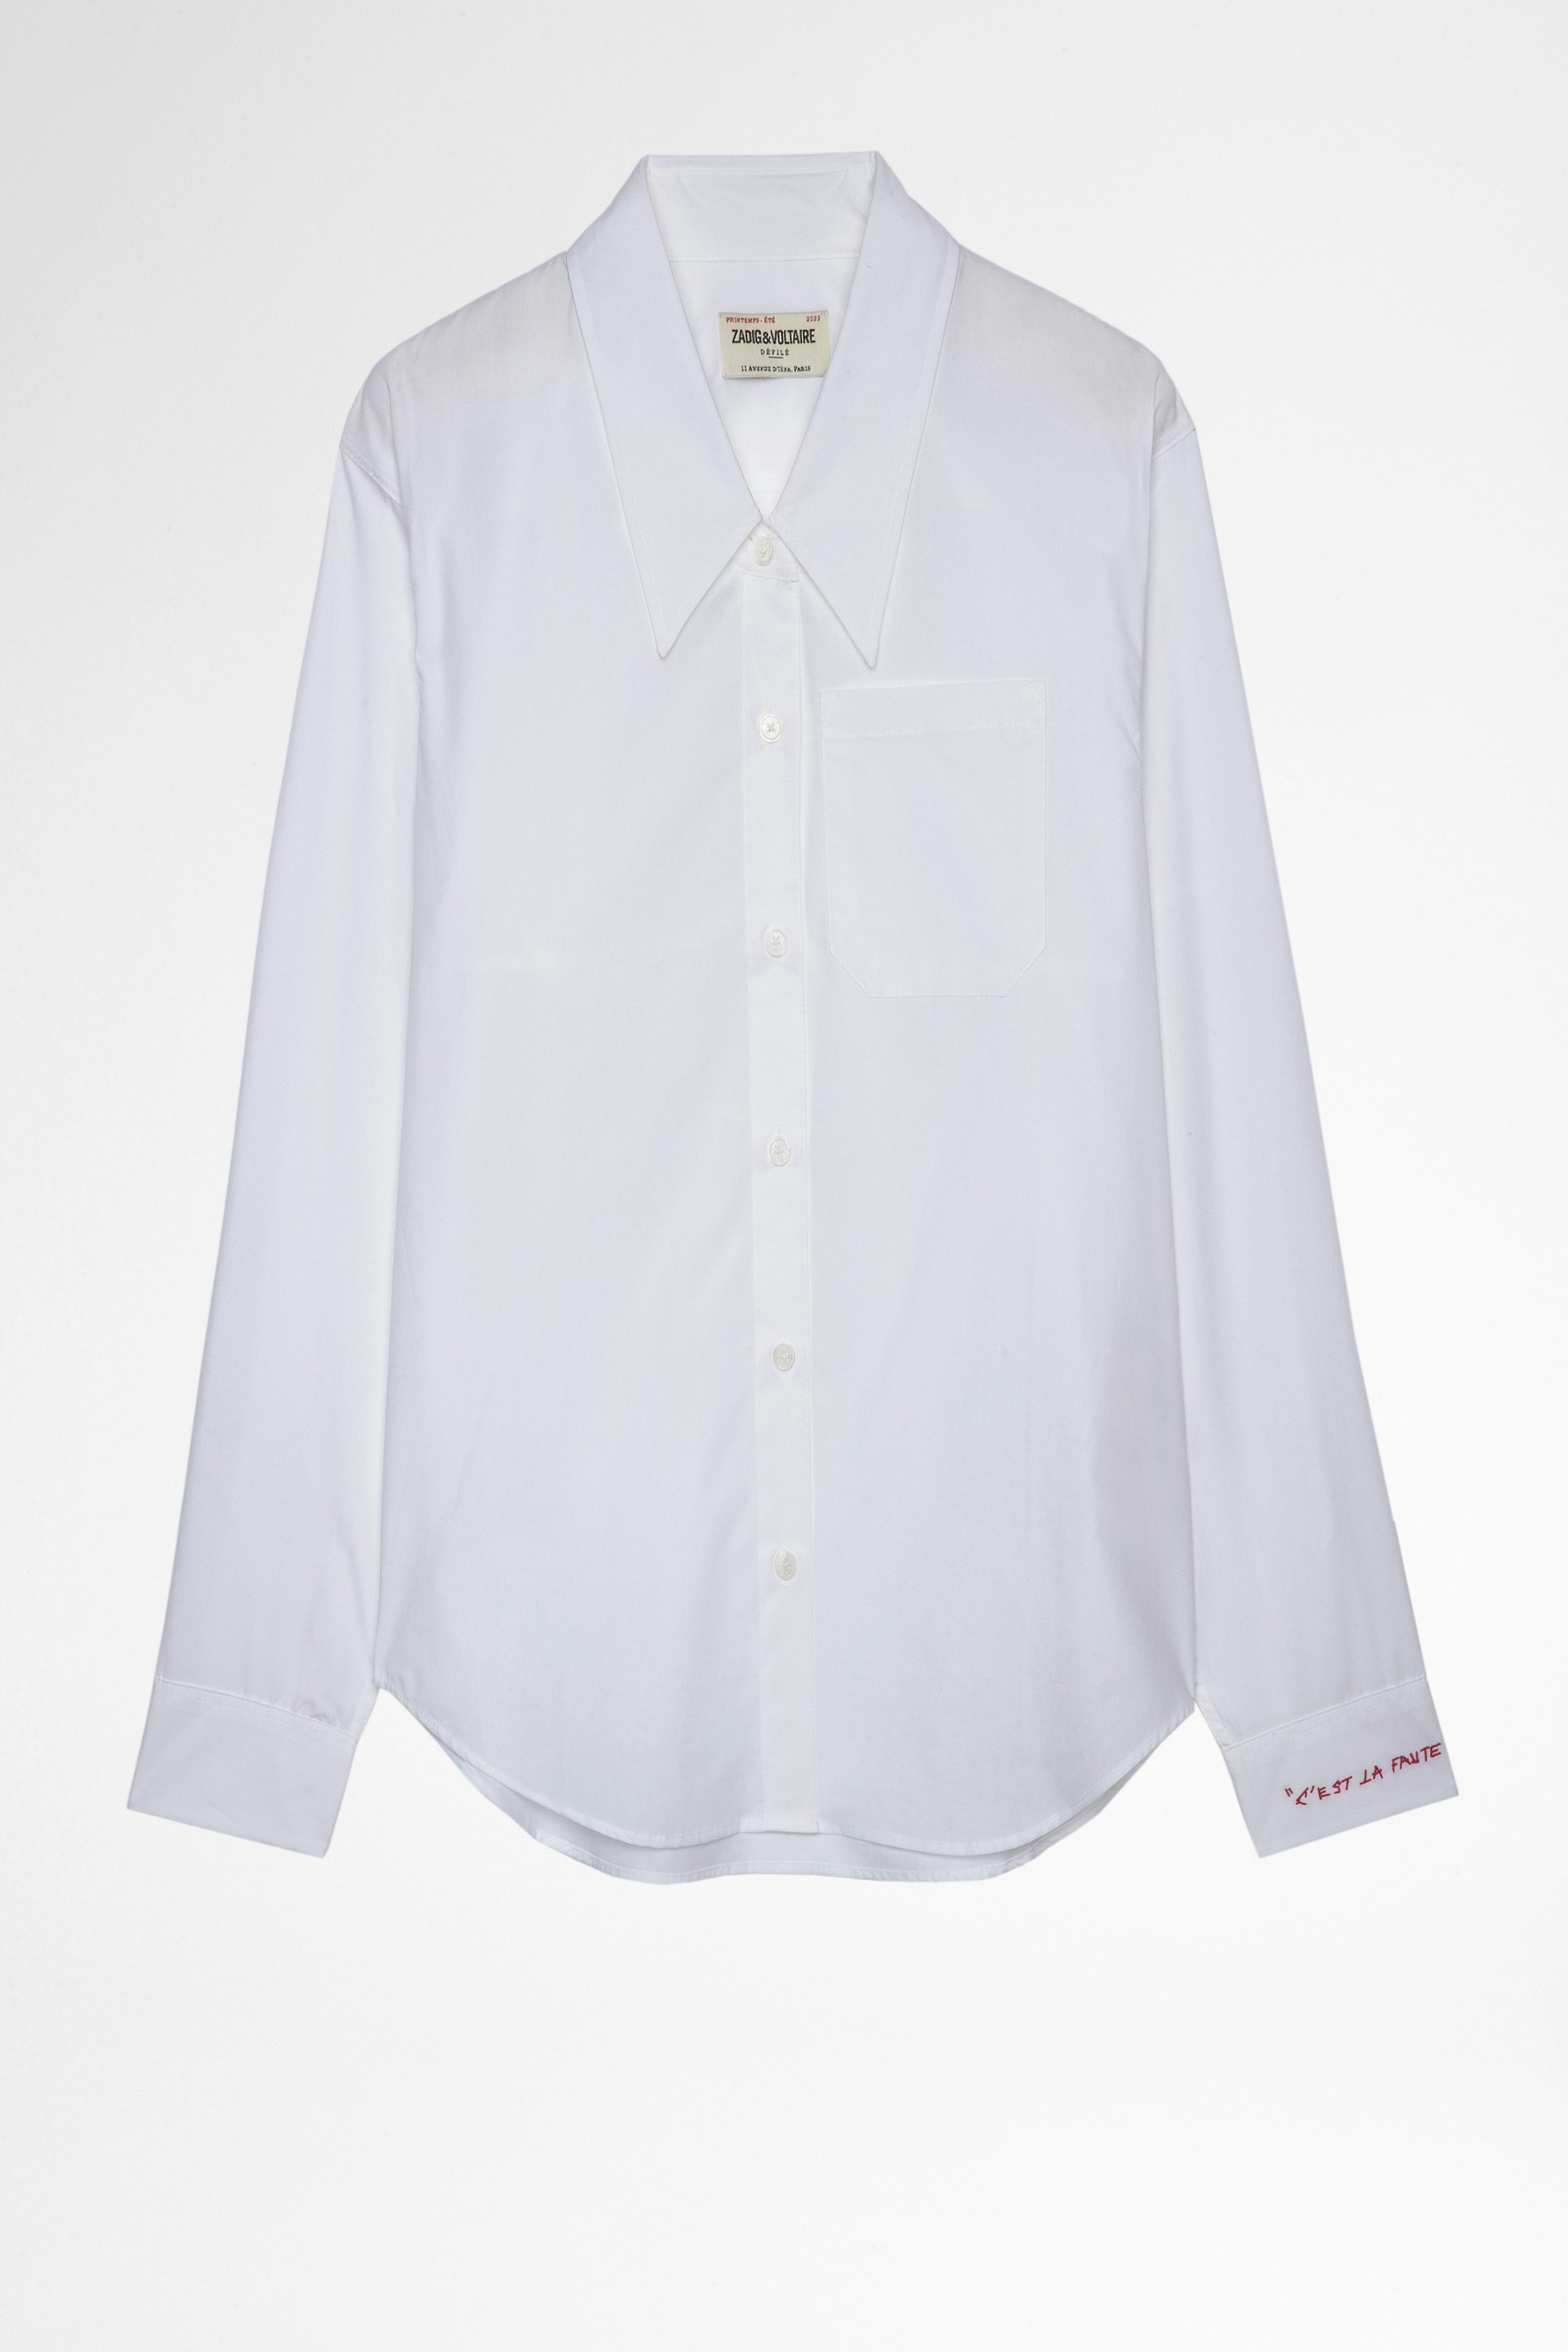 Camisa Topy Camisa blanca de algodón con bordado «C'est la vie» en el puño para mujer